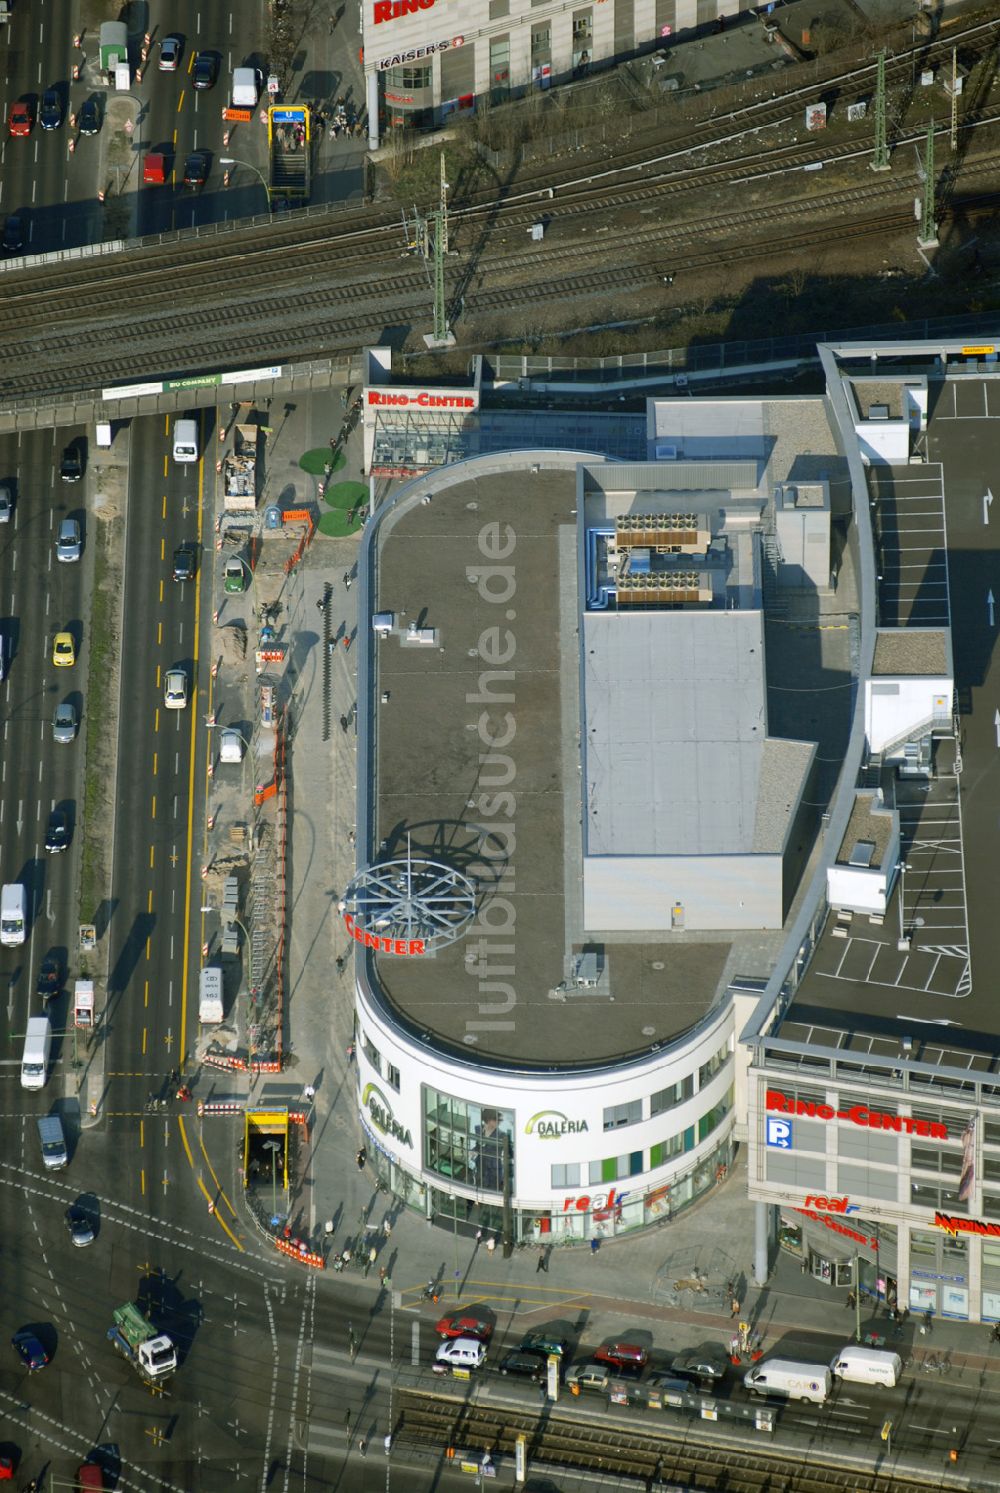 Berlin von oben - Das fertige Ringcenter 3 der ECE GmbH an der Frankfurter Allee in Berlin-Friedrichshain am Eröffnungstag